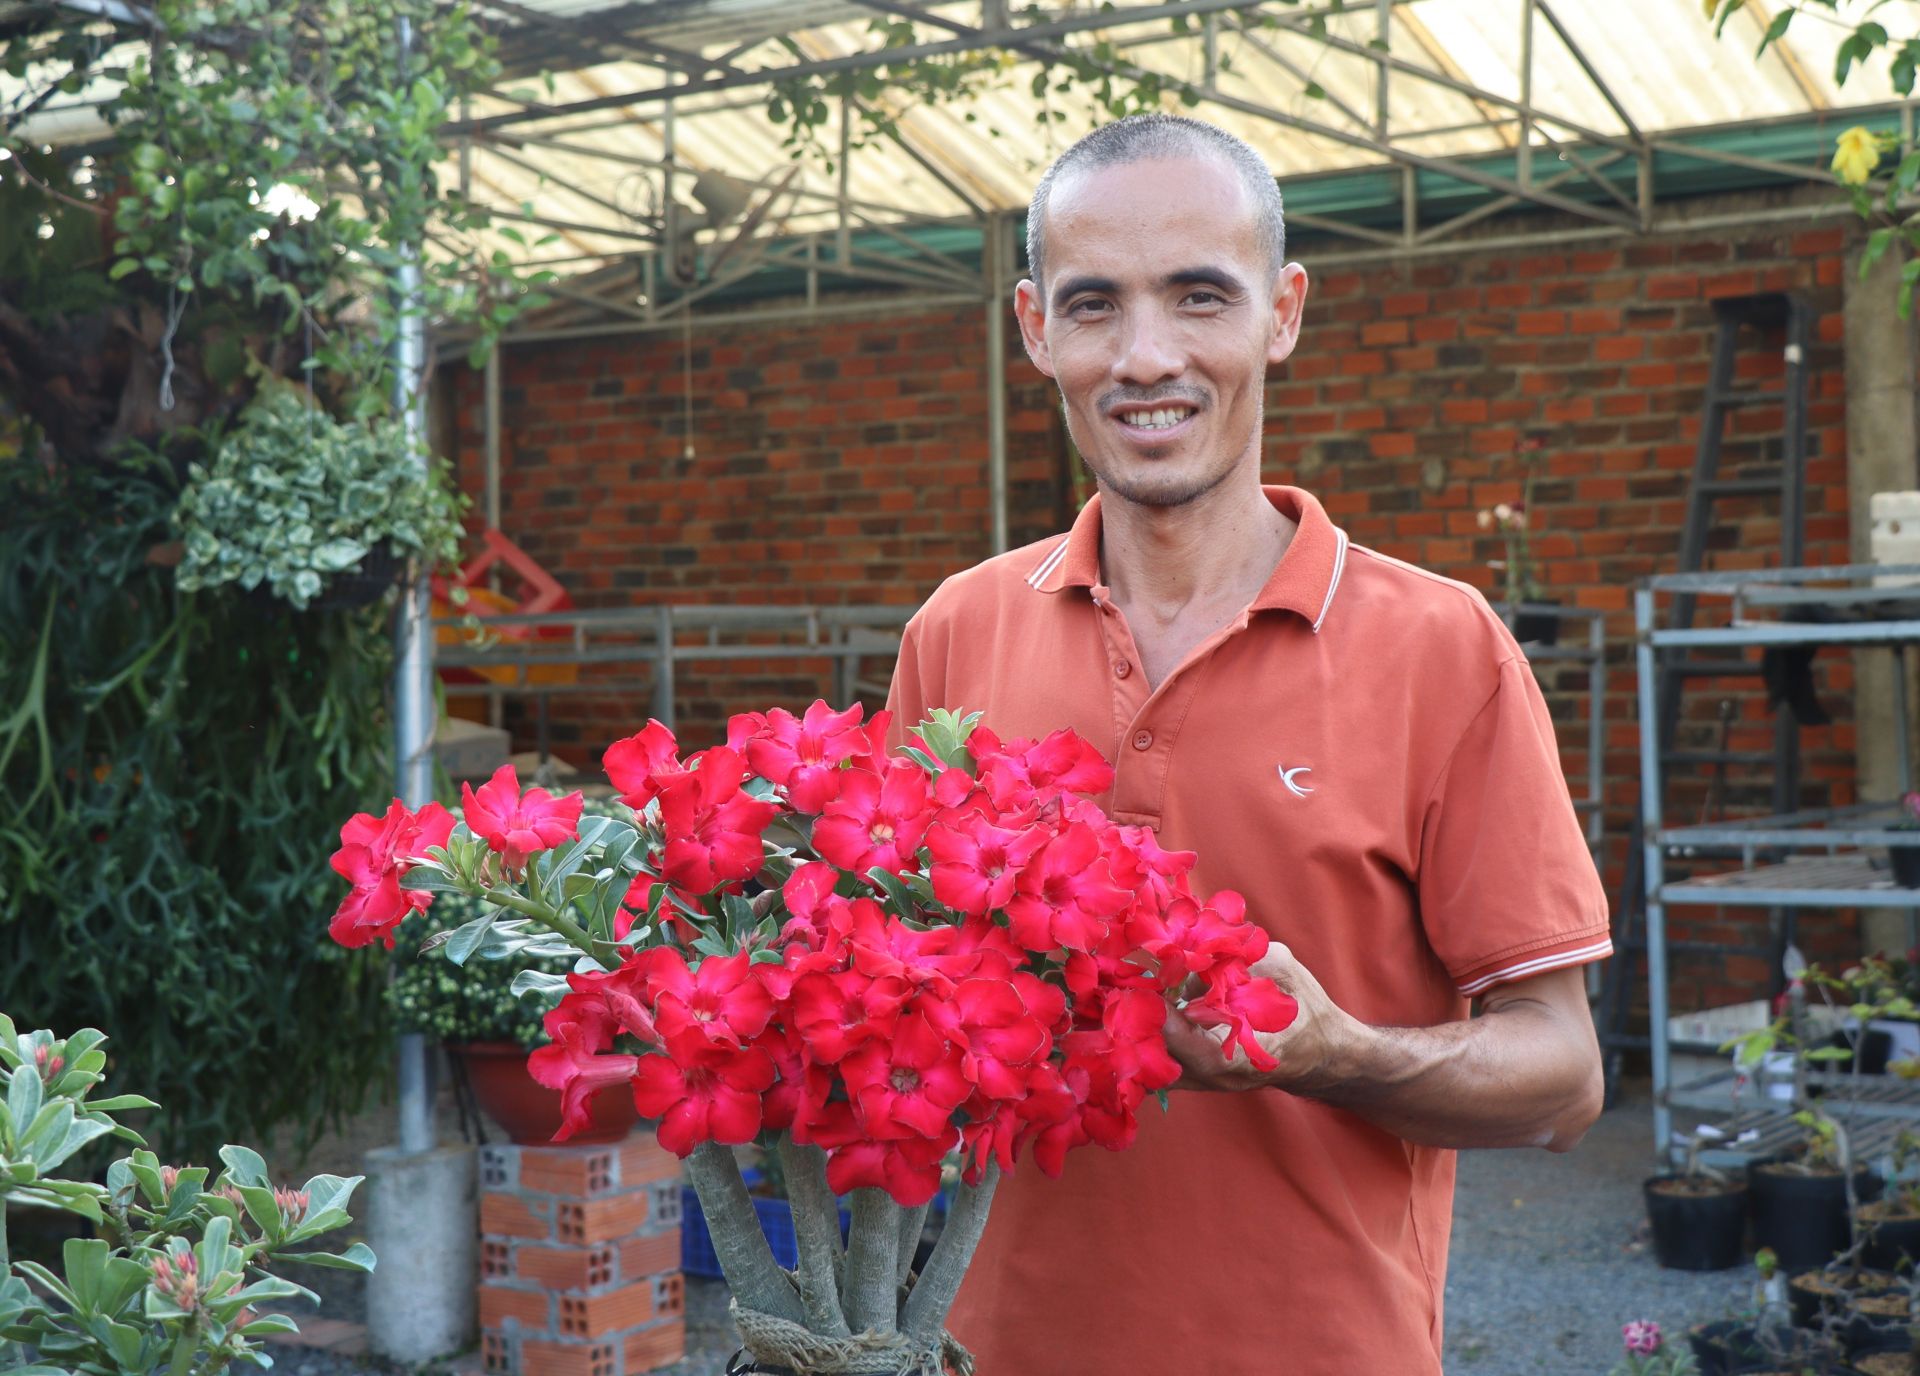 Vườn hoa sứ của một nông dân đất Tây Ninh, ngắm thôi đã mê lắm rồi, hỏi chuyện ai cũng phục sát đất - Ảnh 1.